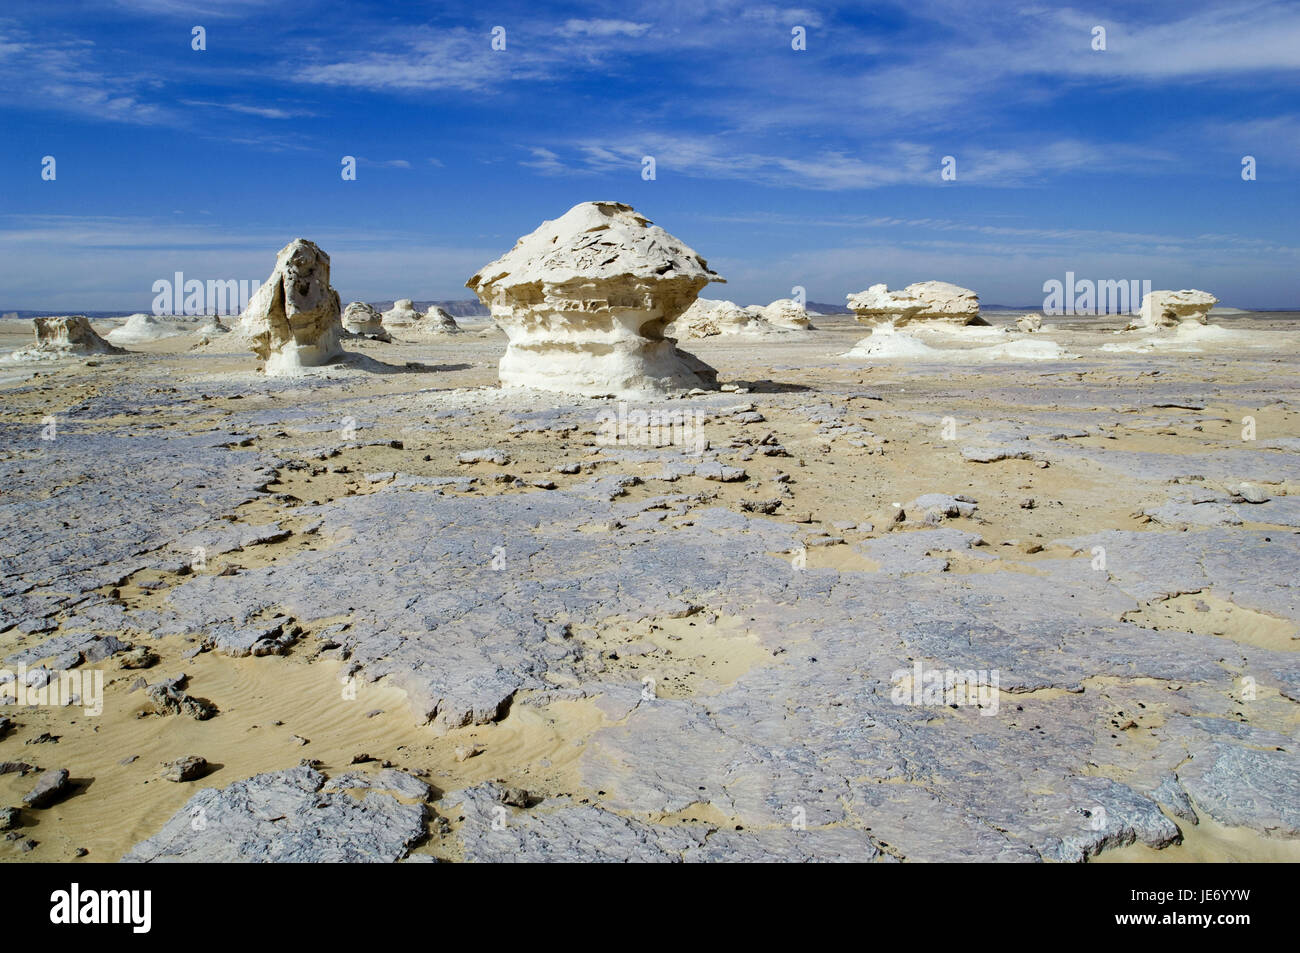 Africa, Egypt, Libyan desert, white desert, rock formations, Stock Photo